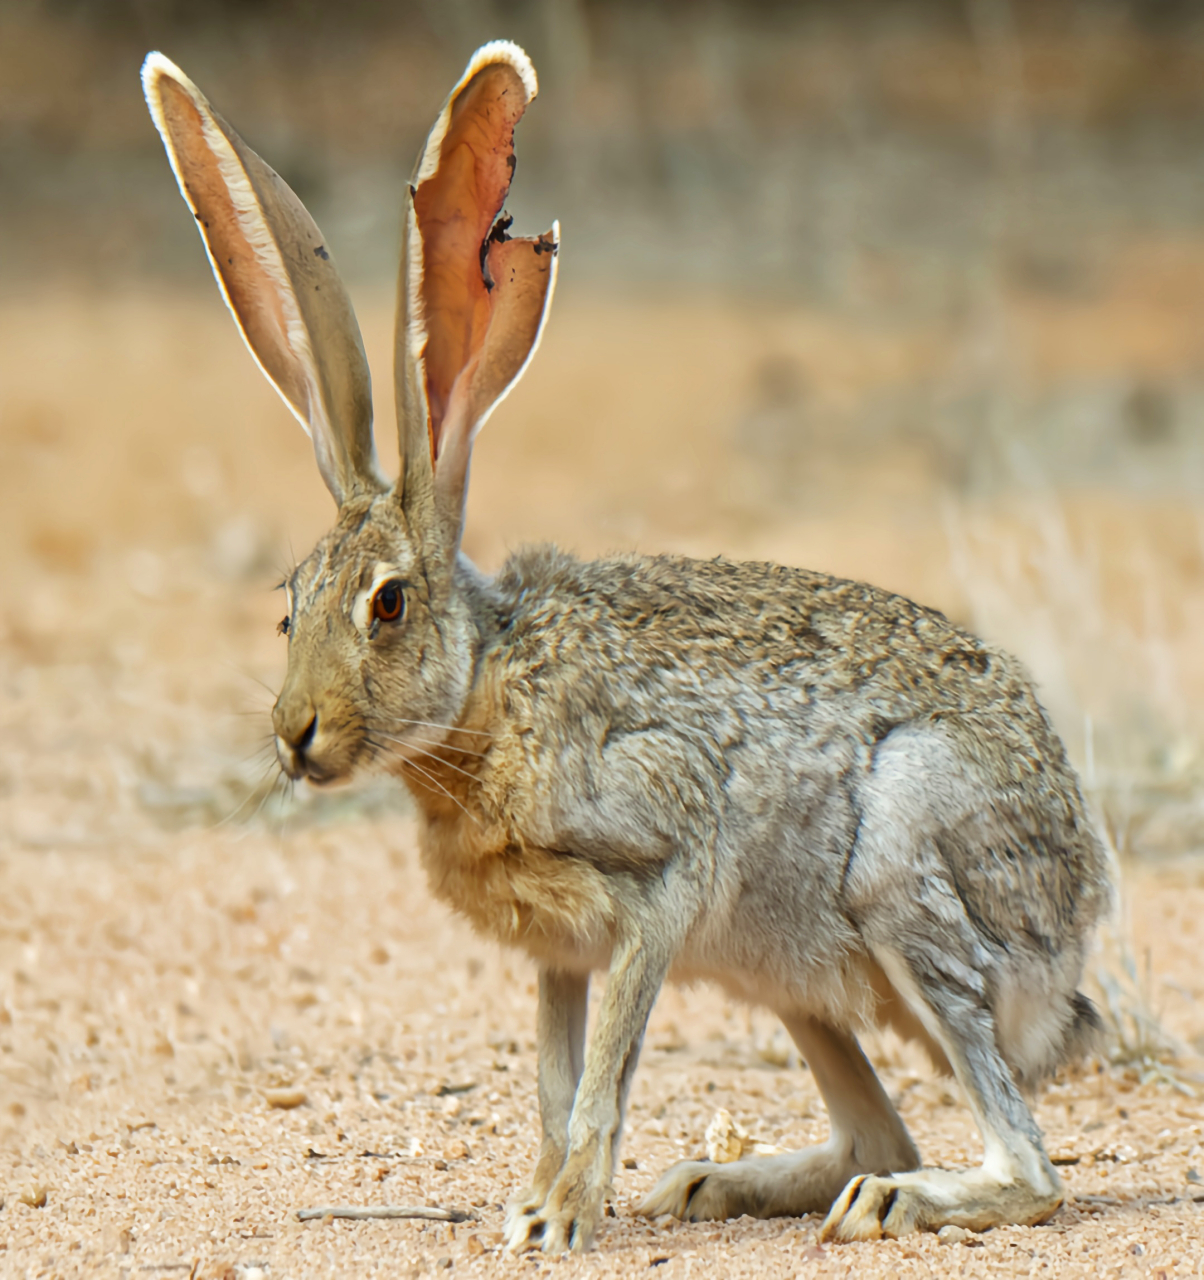 每天认识一种动物——羚羊兔 羚羊兔是奔跑速度最快的兔子,时速可达45